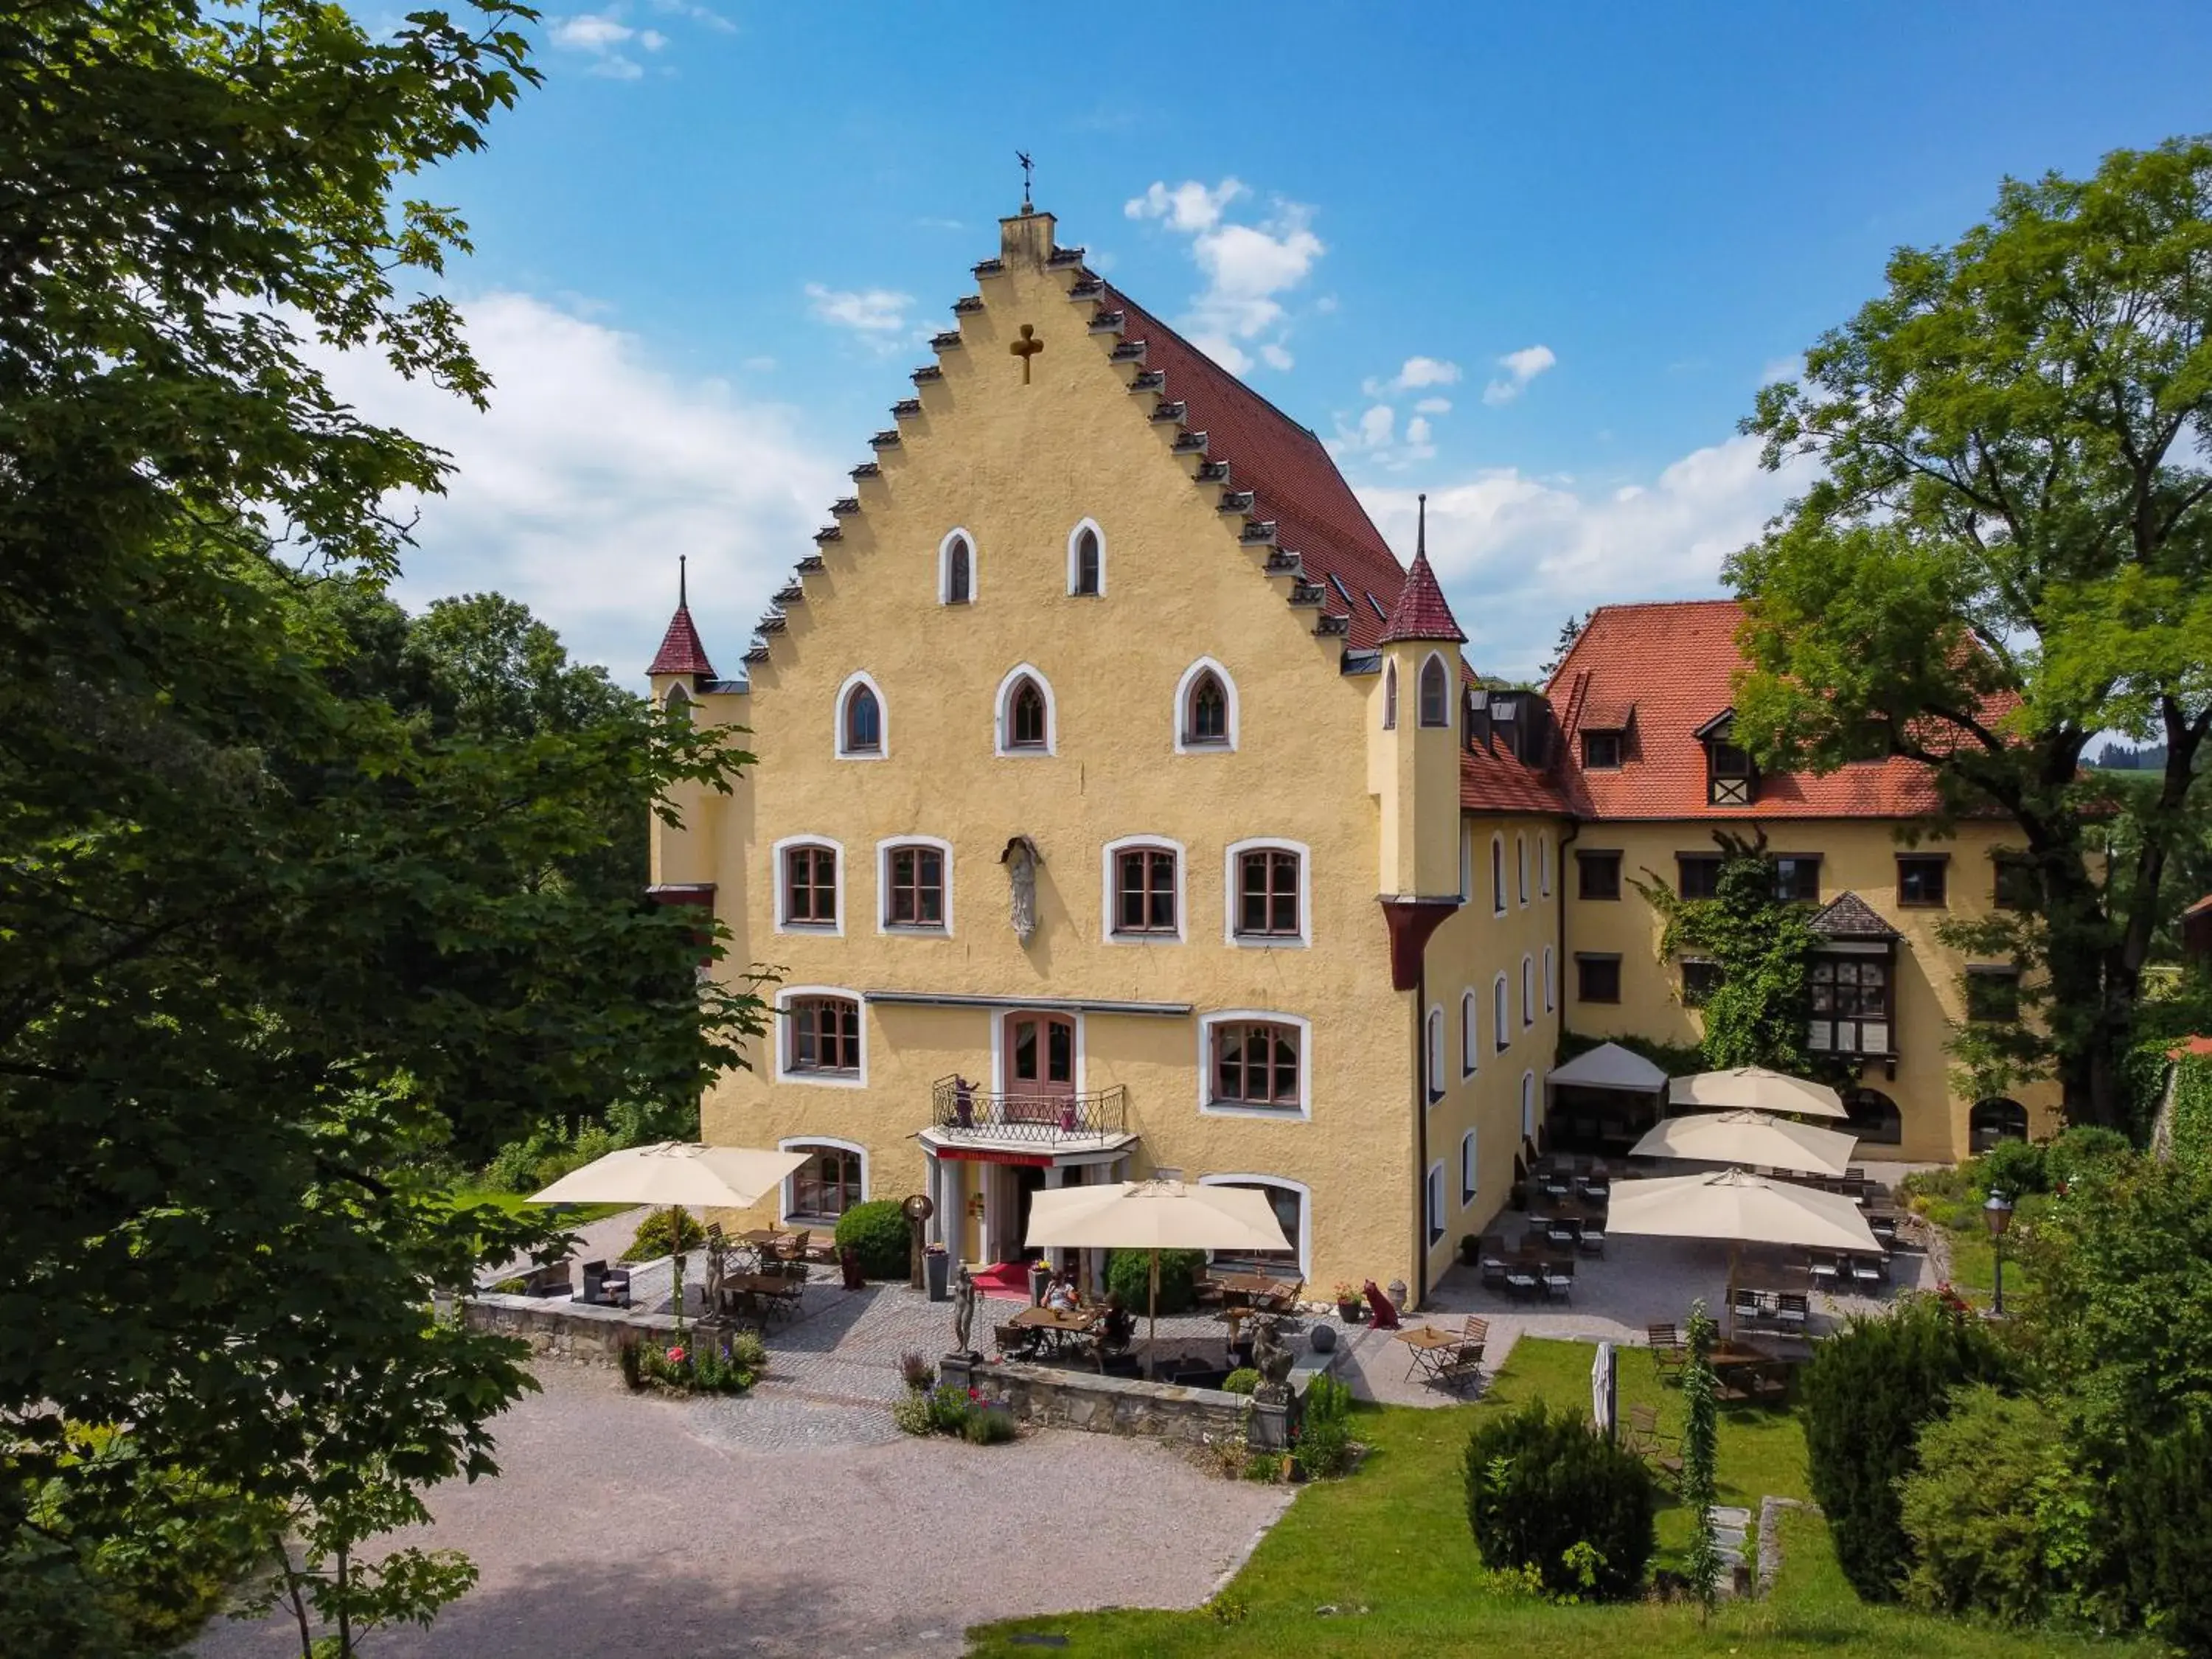 Property Building in Schloss zu Hopferau